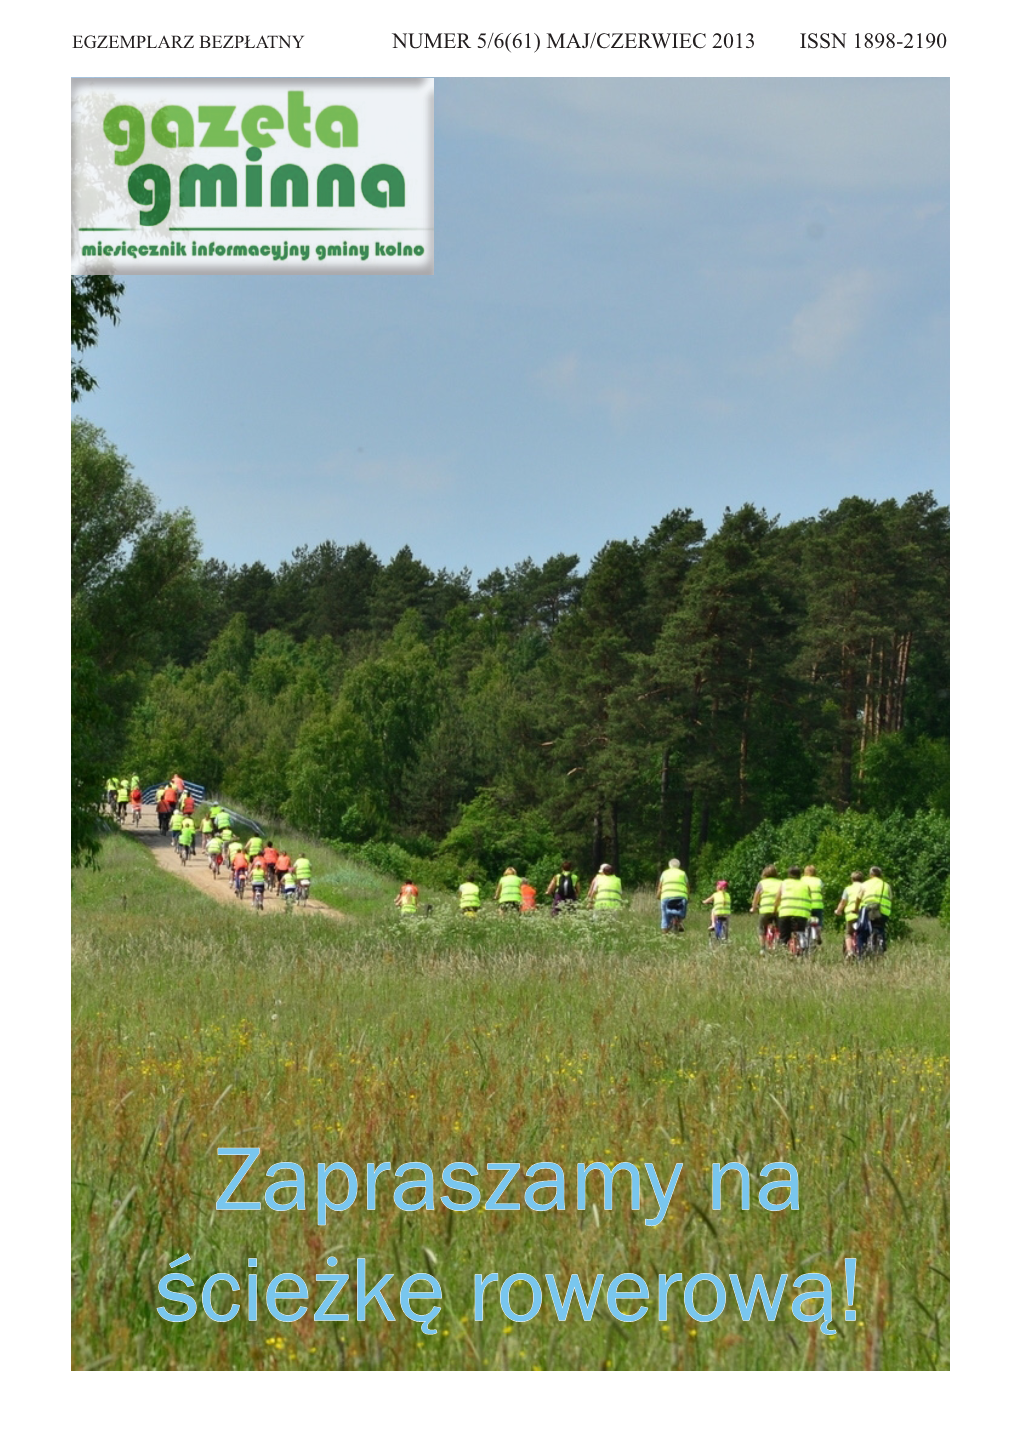 Zapraszamy Na Ścieżkę Rowerową! Gazeta Gminna 5/6(61) / 2013 Z Działalności Wójta Między Sesjami